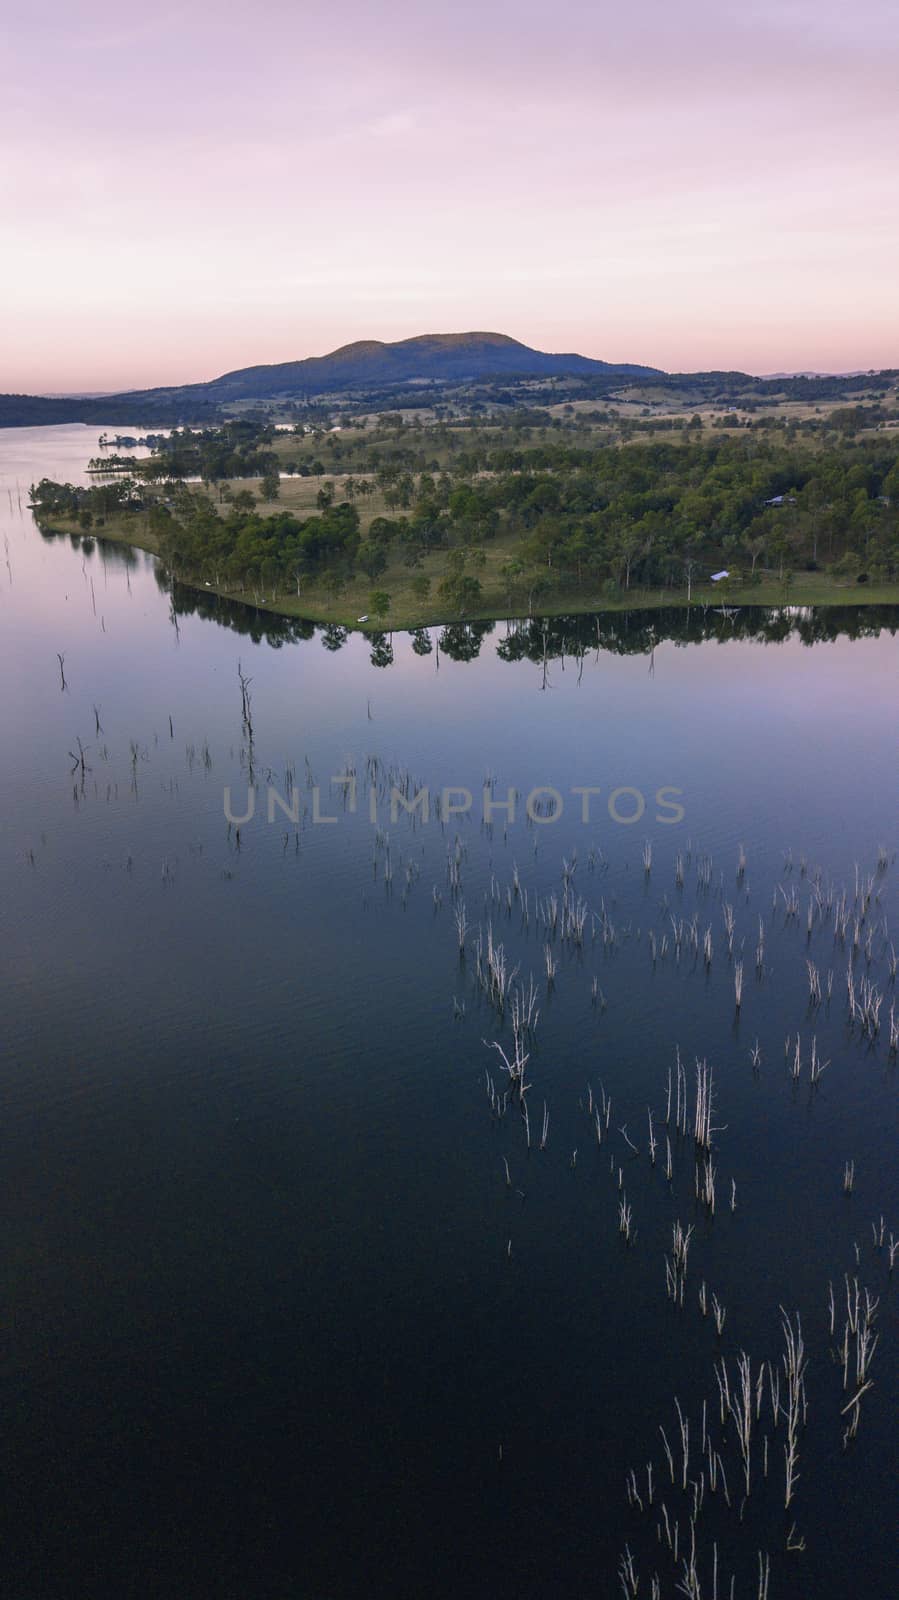 Aerial view of Lake Moogerah in Queensland by artistrobd